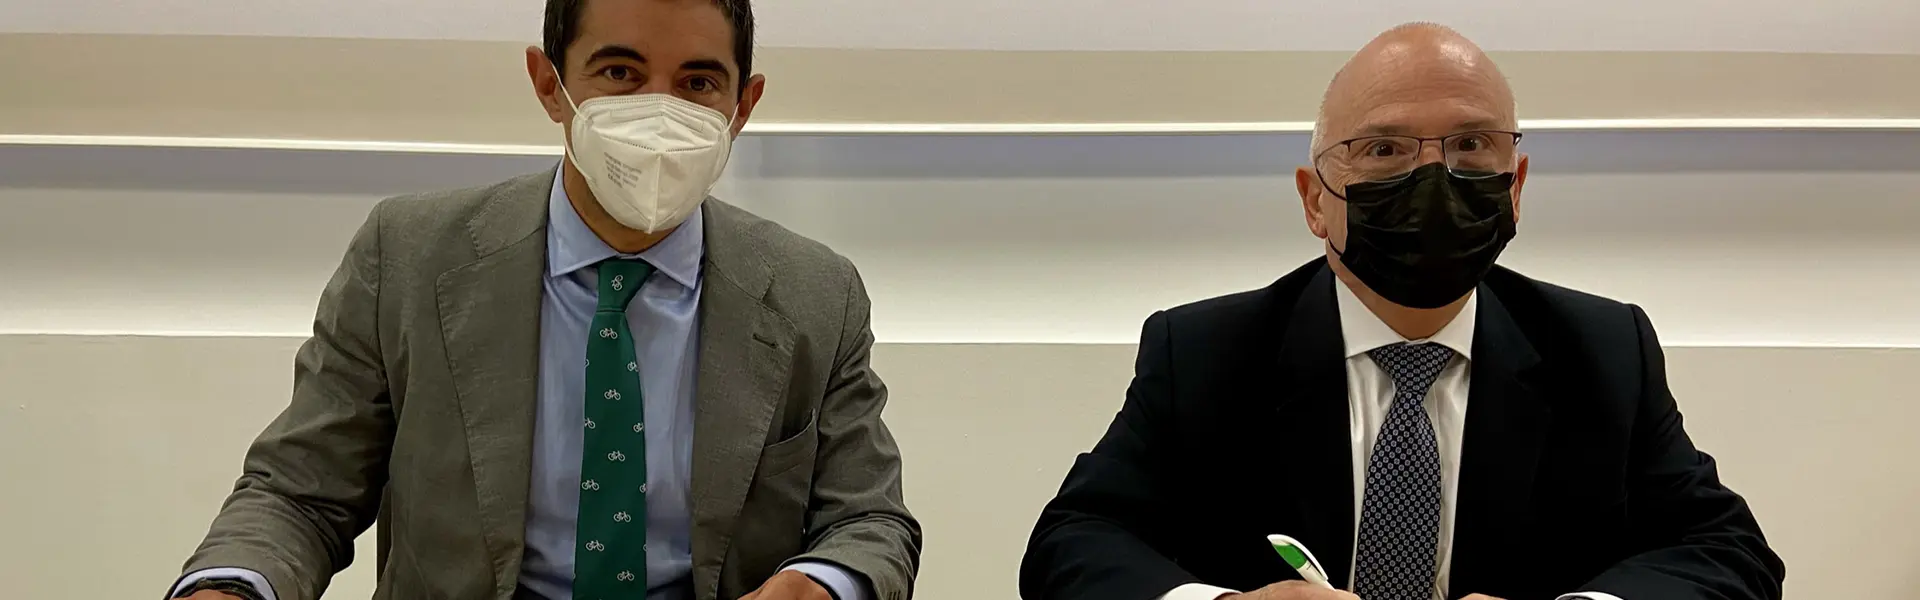 Avalia y Triodos Bank firman un acuerdo para financiar a pymes y autonomos en Aragon hemeroteca cesgar web